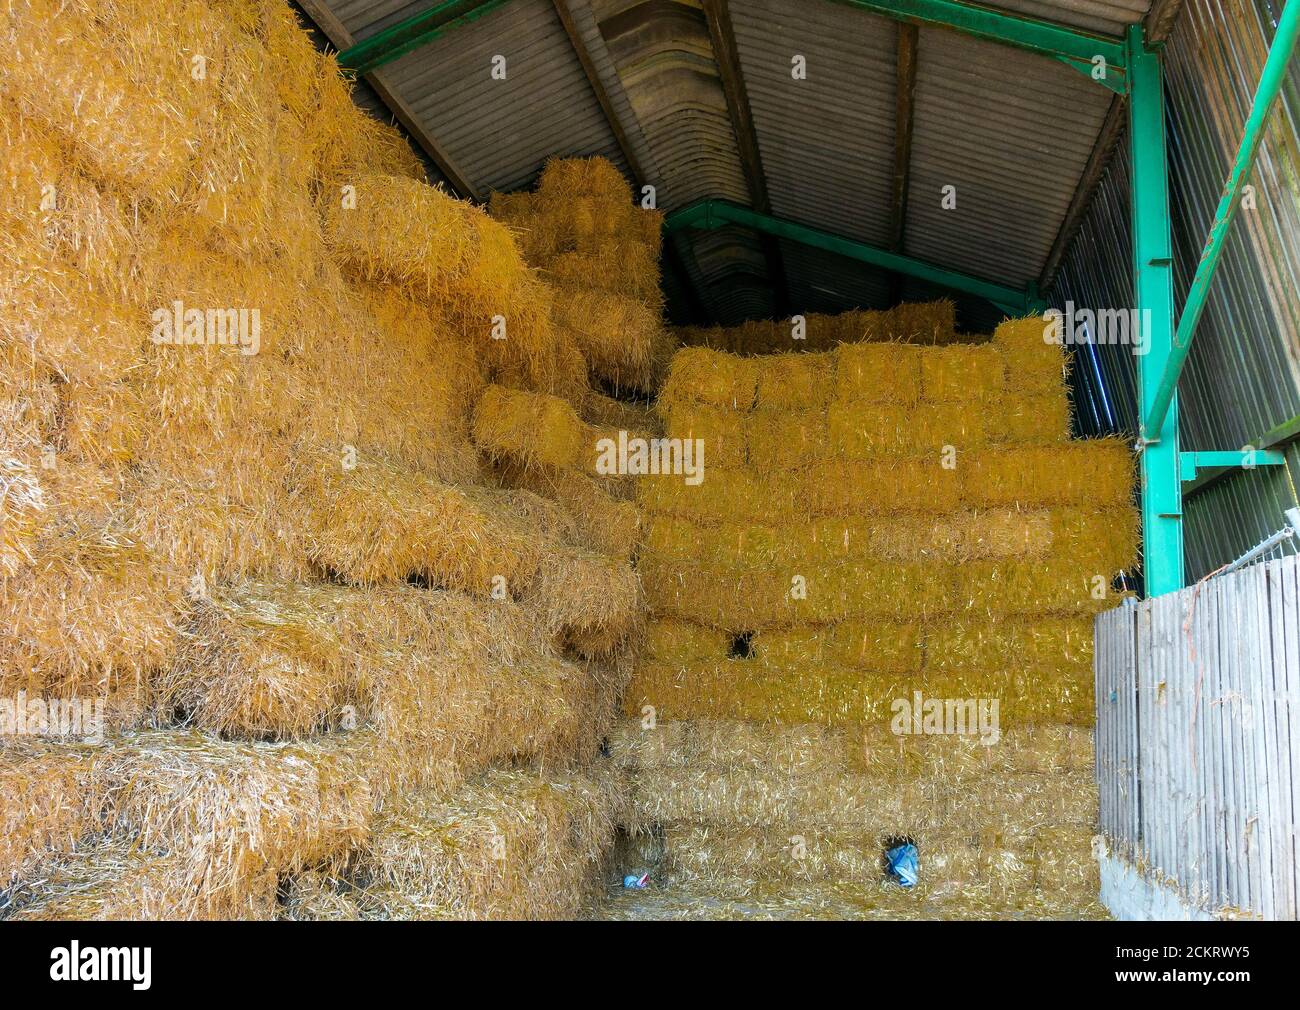 Balles de foin ou de paille angulaires pour l'alimentation des bovins d'hiver une ferme empilée dans une grange pour le stockage à sec Banque D'Images